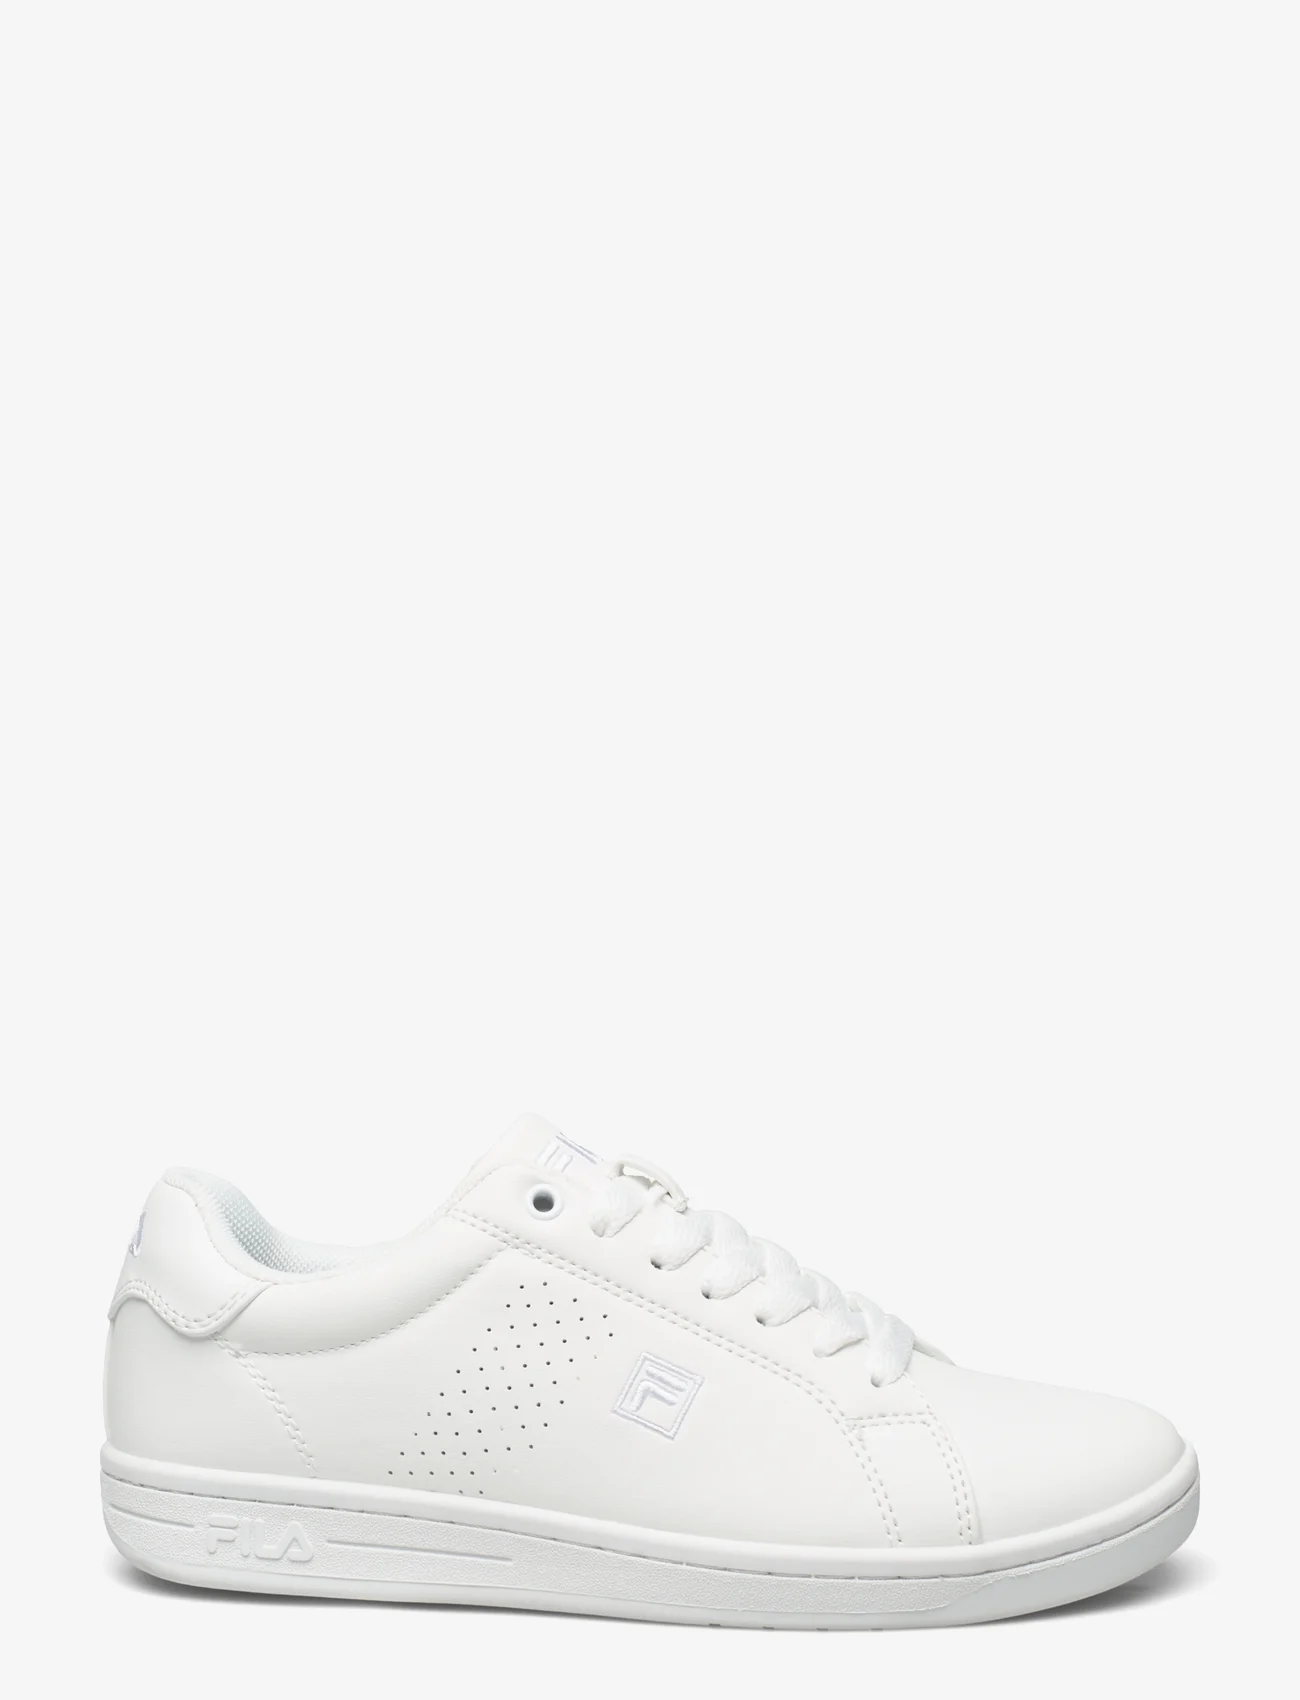 FILA - CROSSCOURT 2 wmn - low top sneakers - white - 1